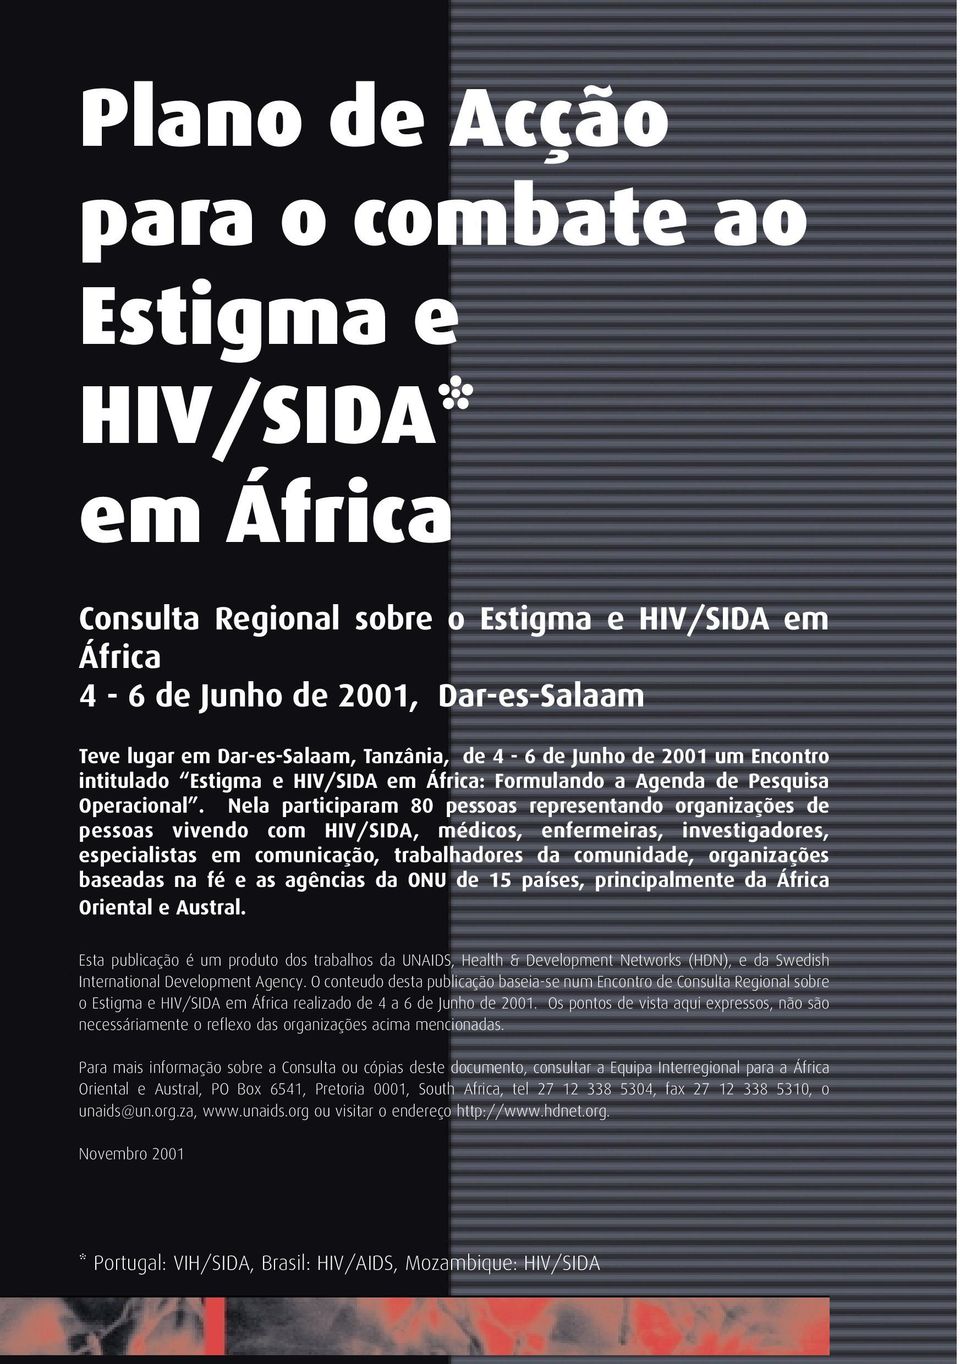 Nela participaram 80 pessoas representando organizações de pessoas vivendo com HIV/SIDA, médicos, enfermeiras, investigadores, especialistas em comunicação, trabalhadores da comunidade, organizações